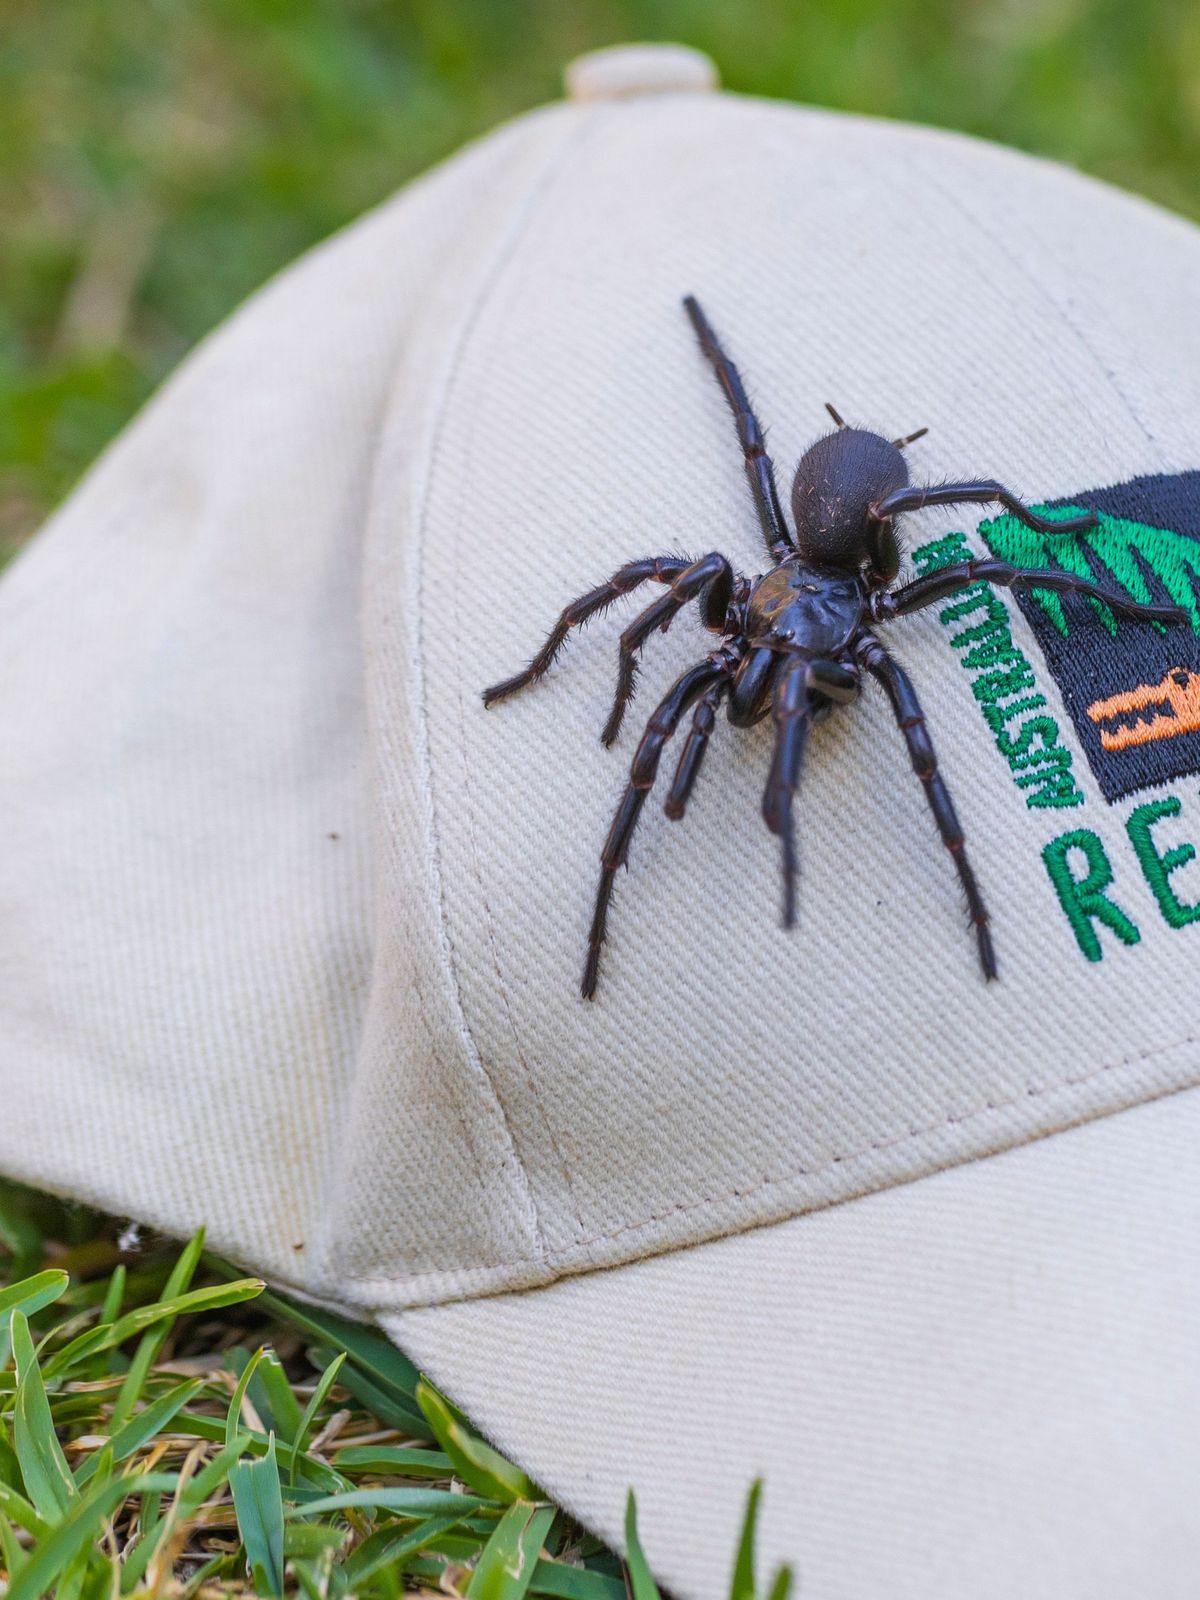 Australia Largest Poisonous Spider